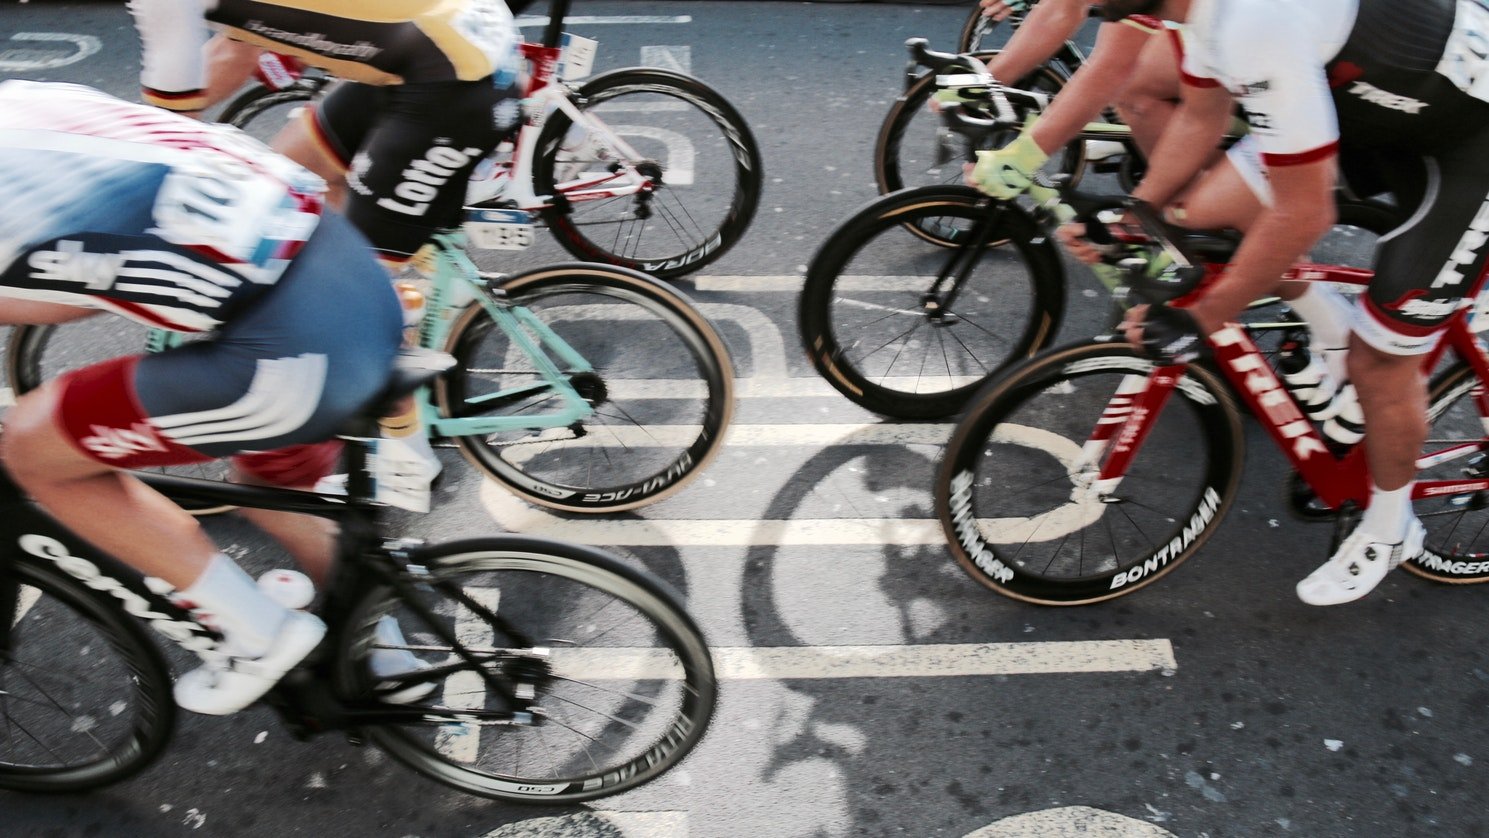 15 interessante Fakten zur Tour de France - Fahrrad XXL Blog